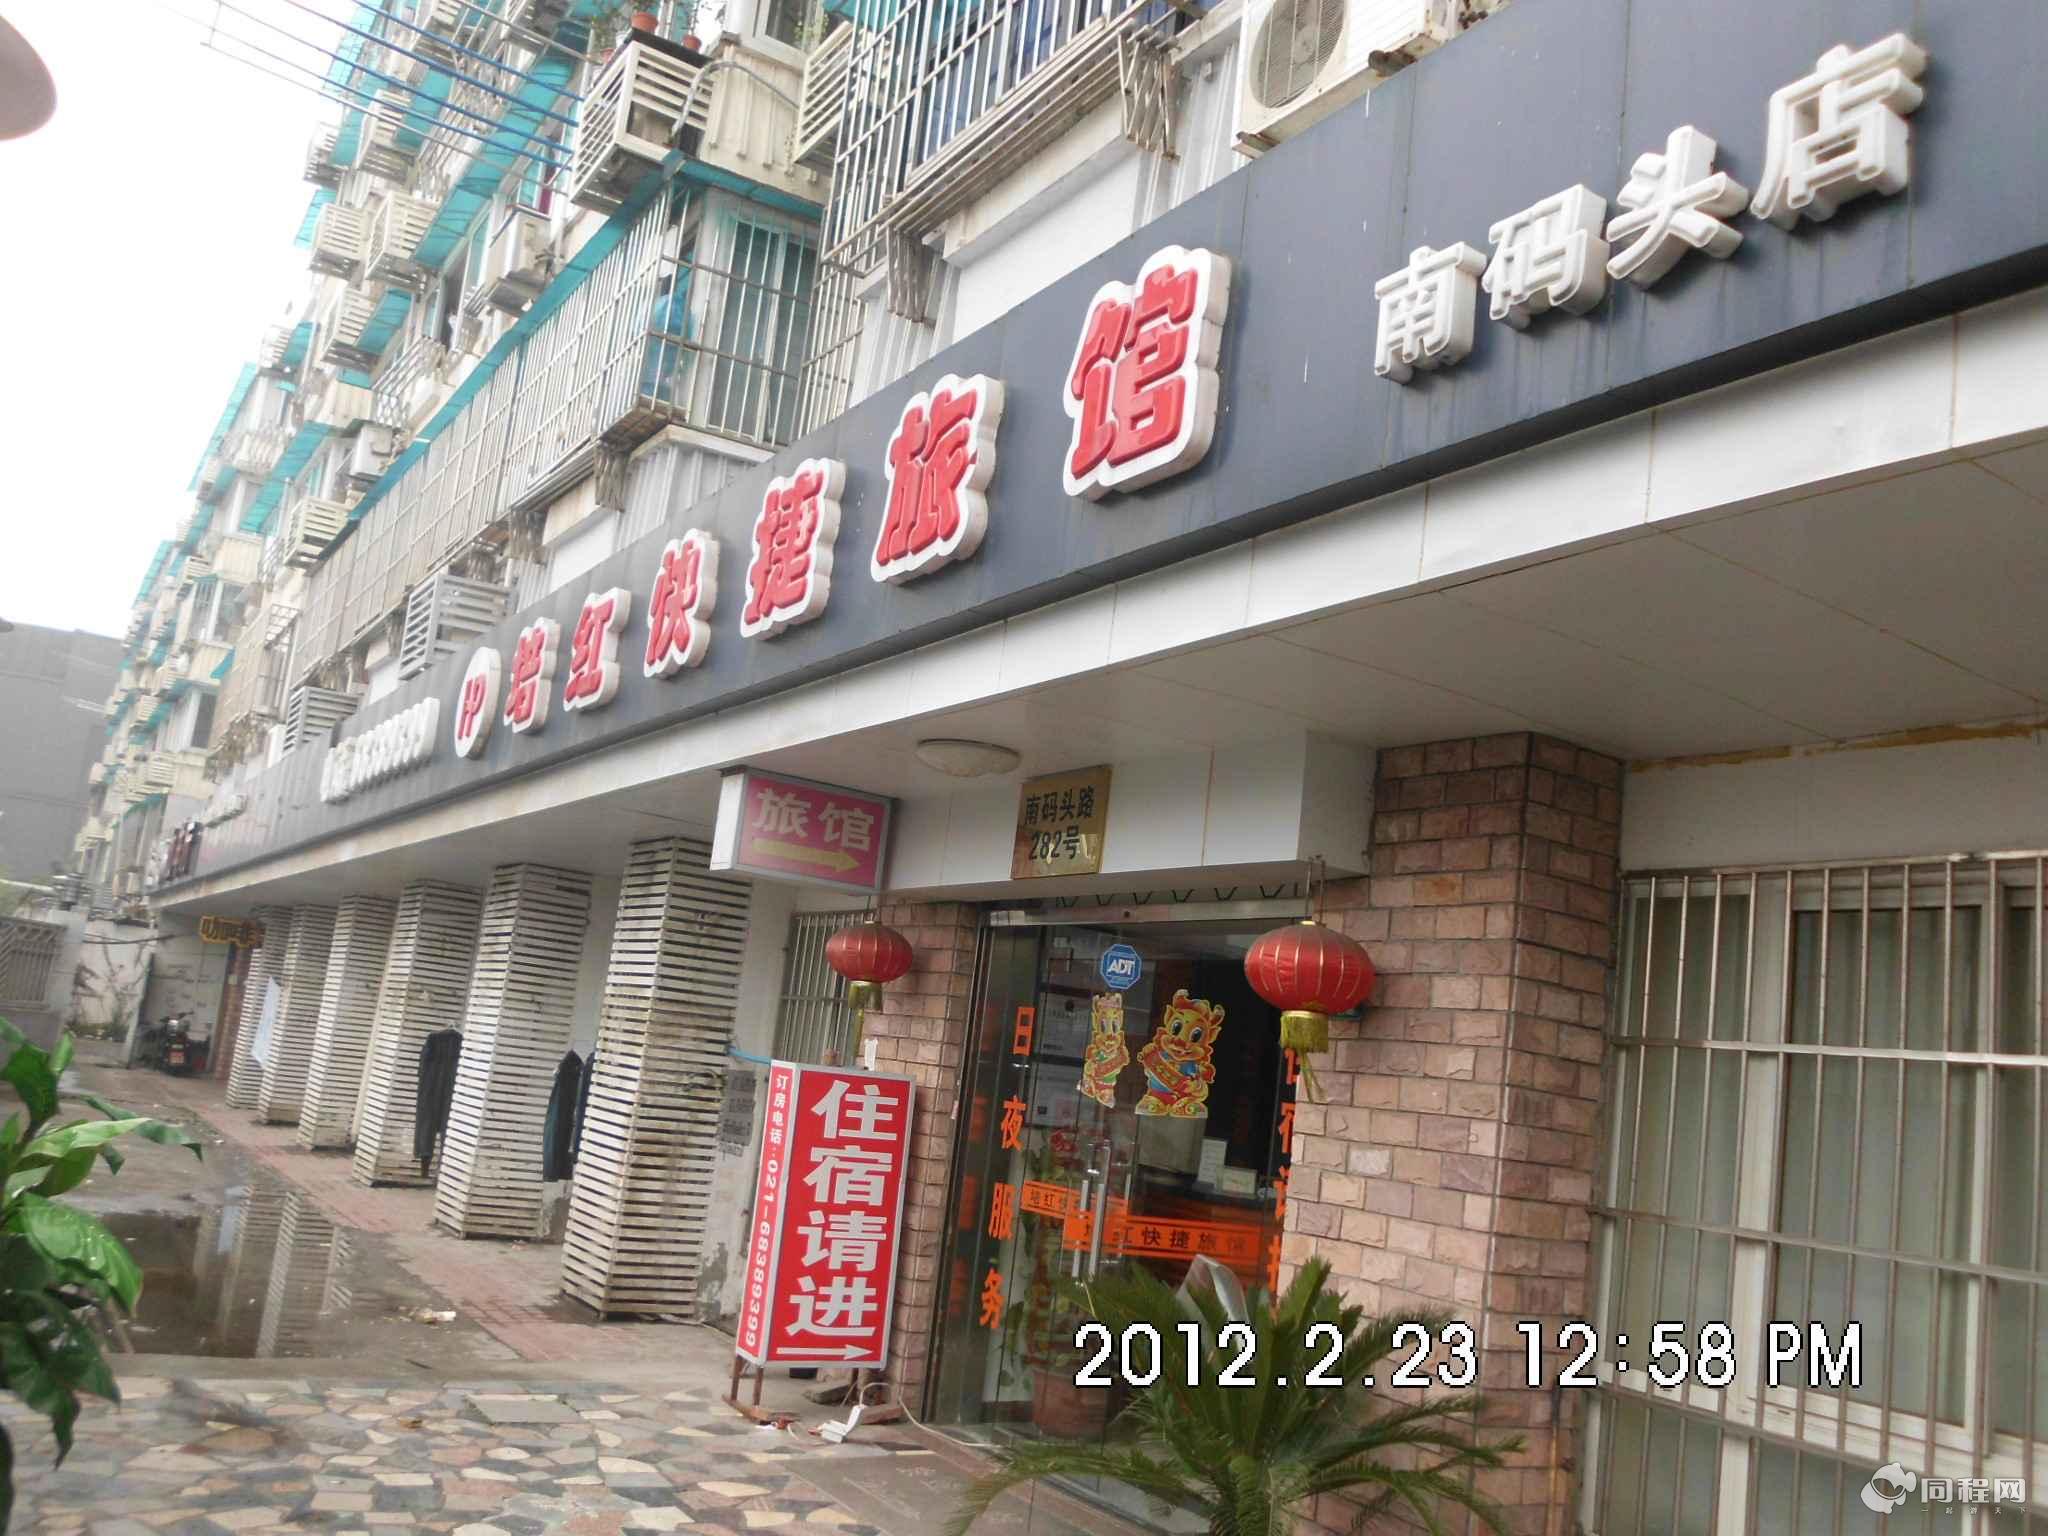 上海培红快捷旅馆（南码头店）（原上海培红快捷旅馆（世博店））图片宾馆外观[由13336bpqwnl提